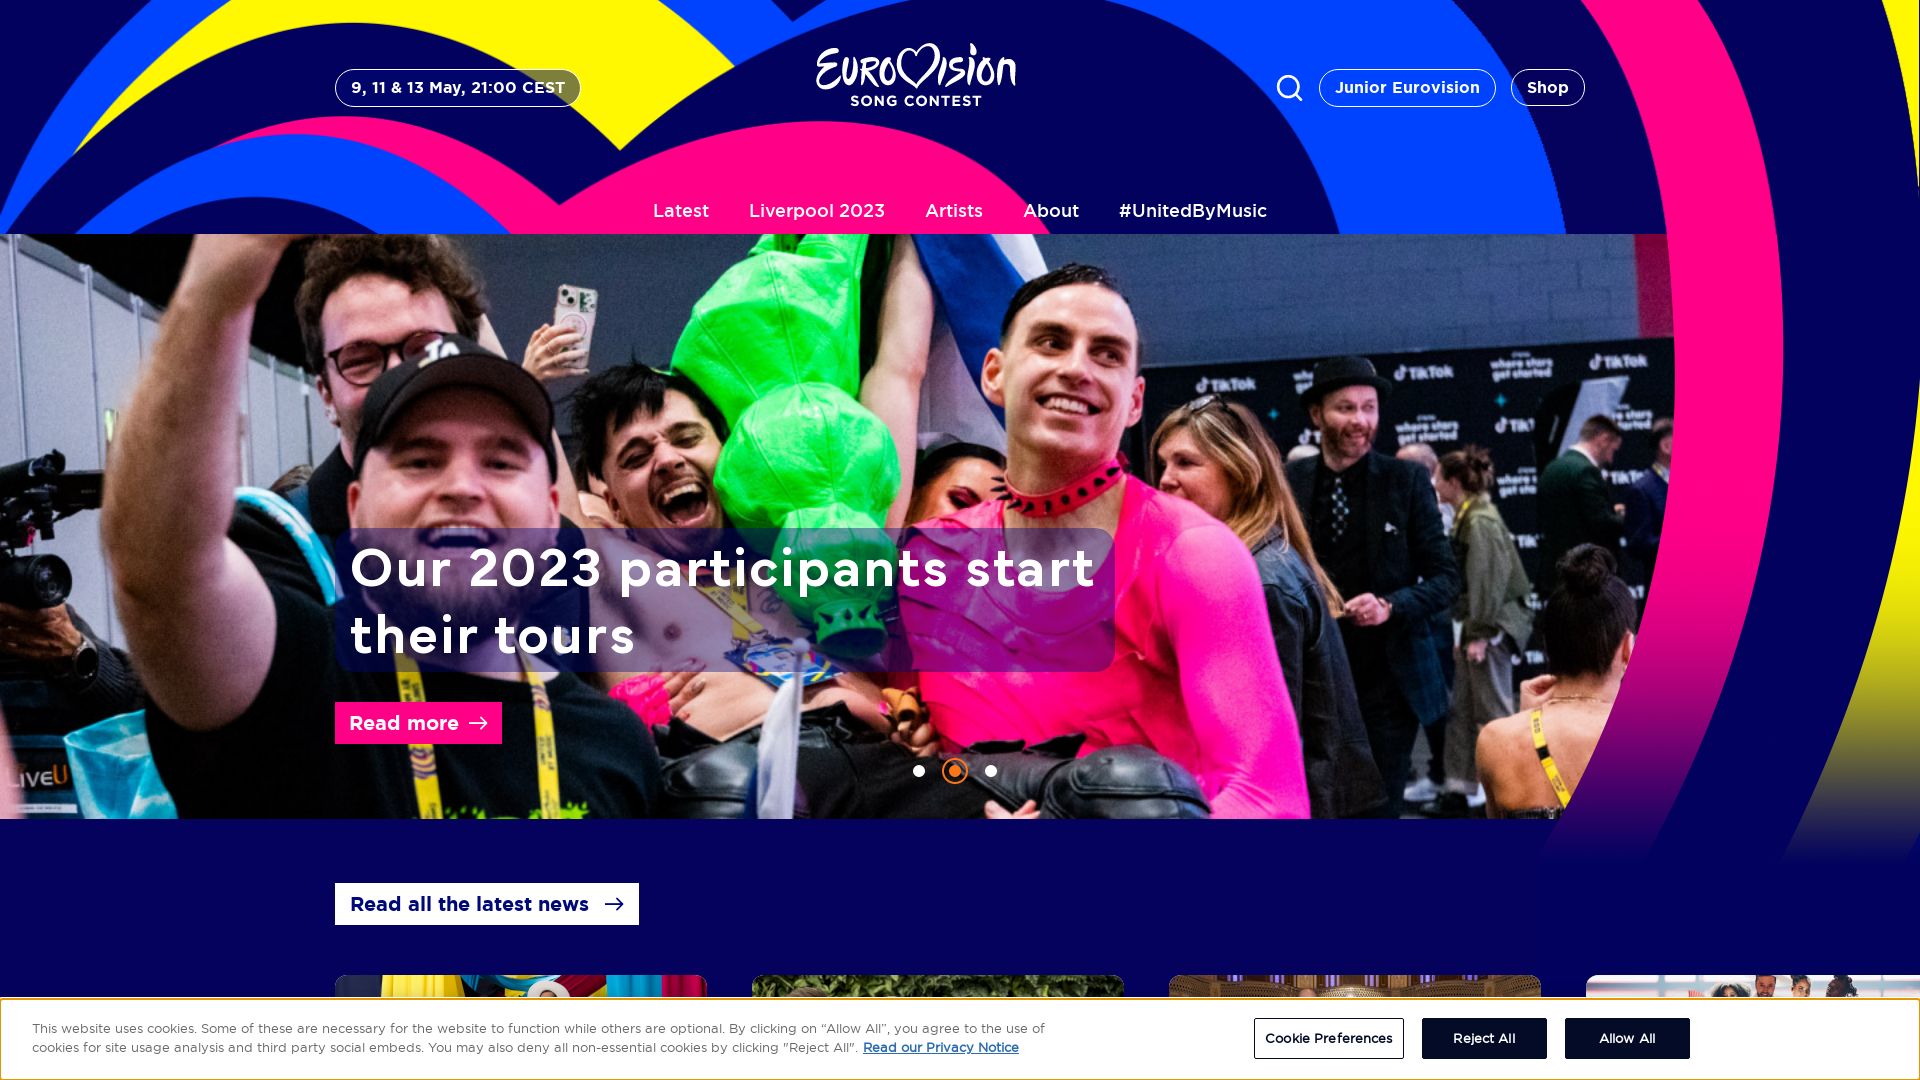 Stato del sito web eurovision.tv è   ONLINE